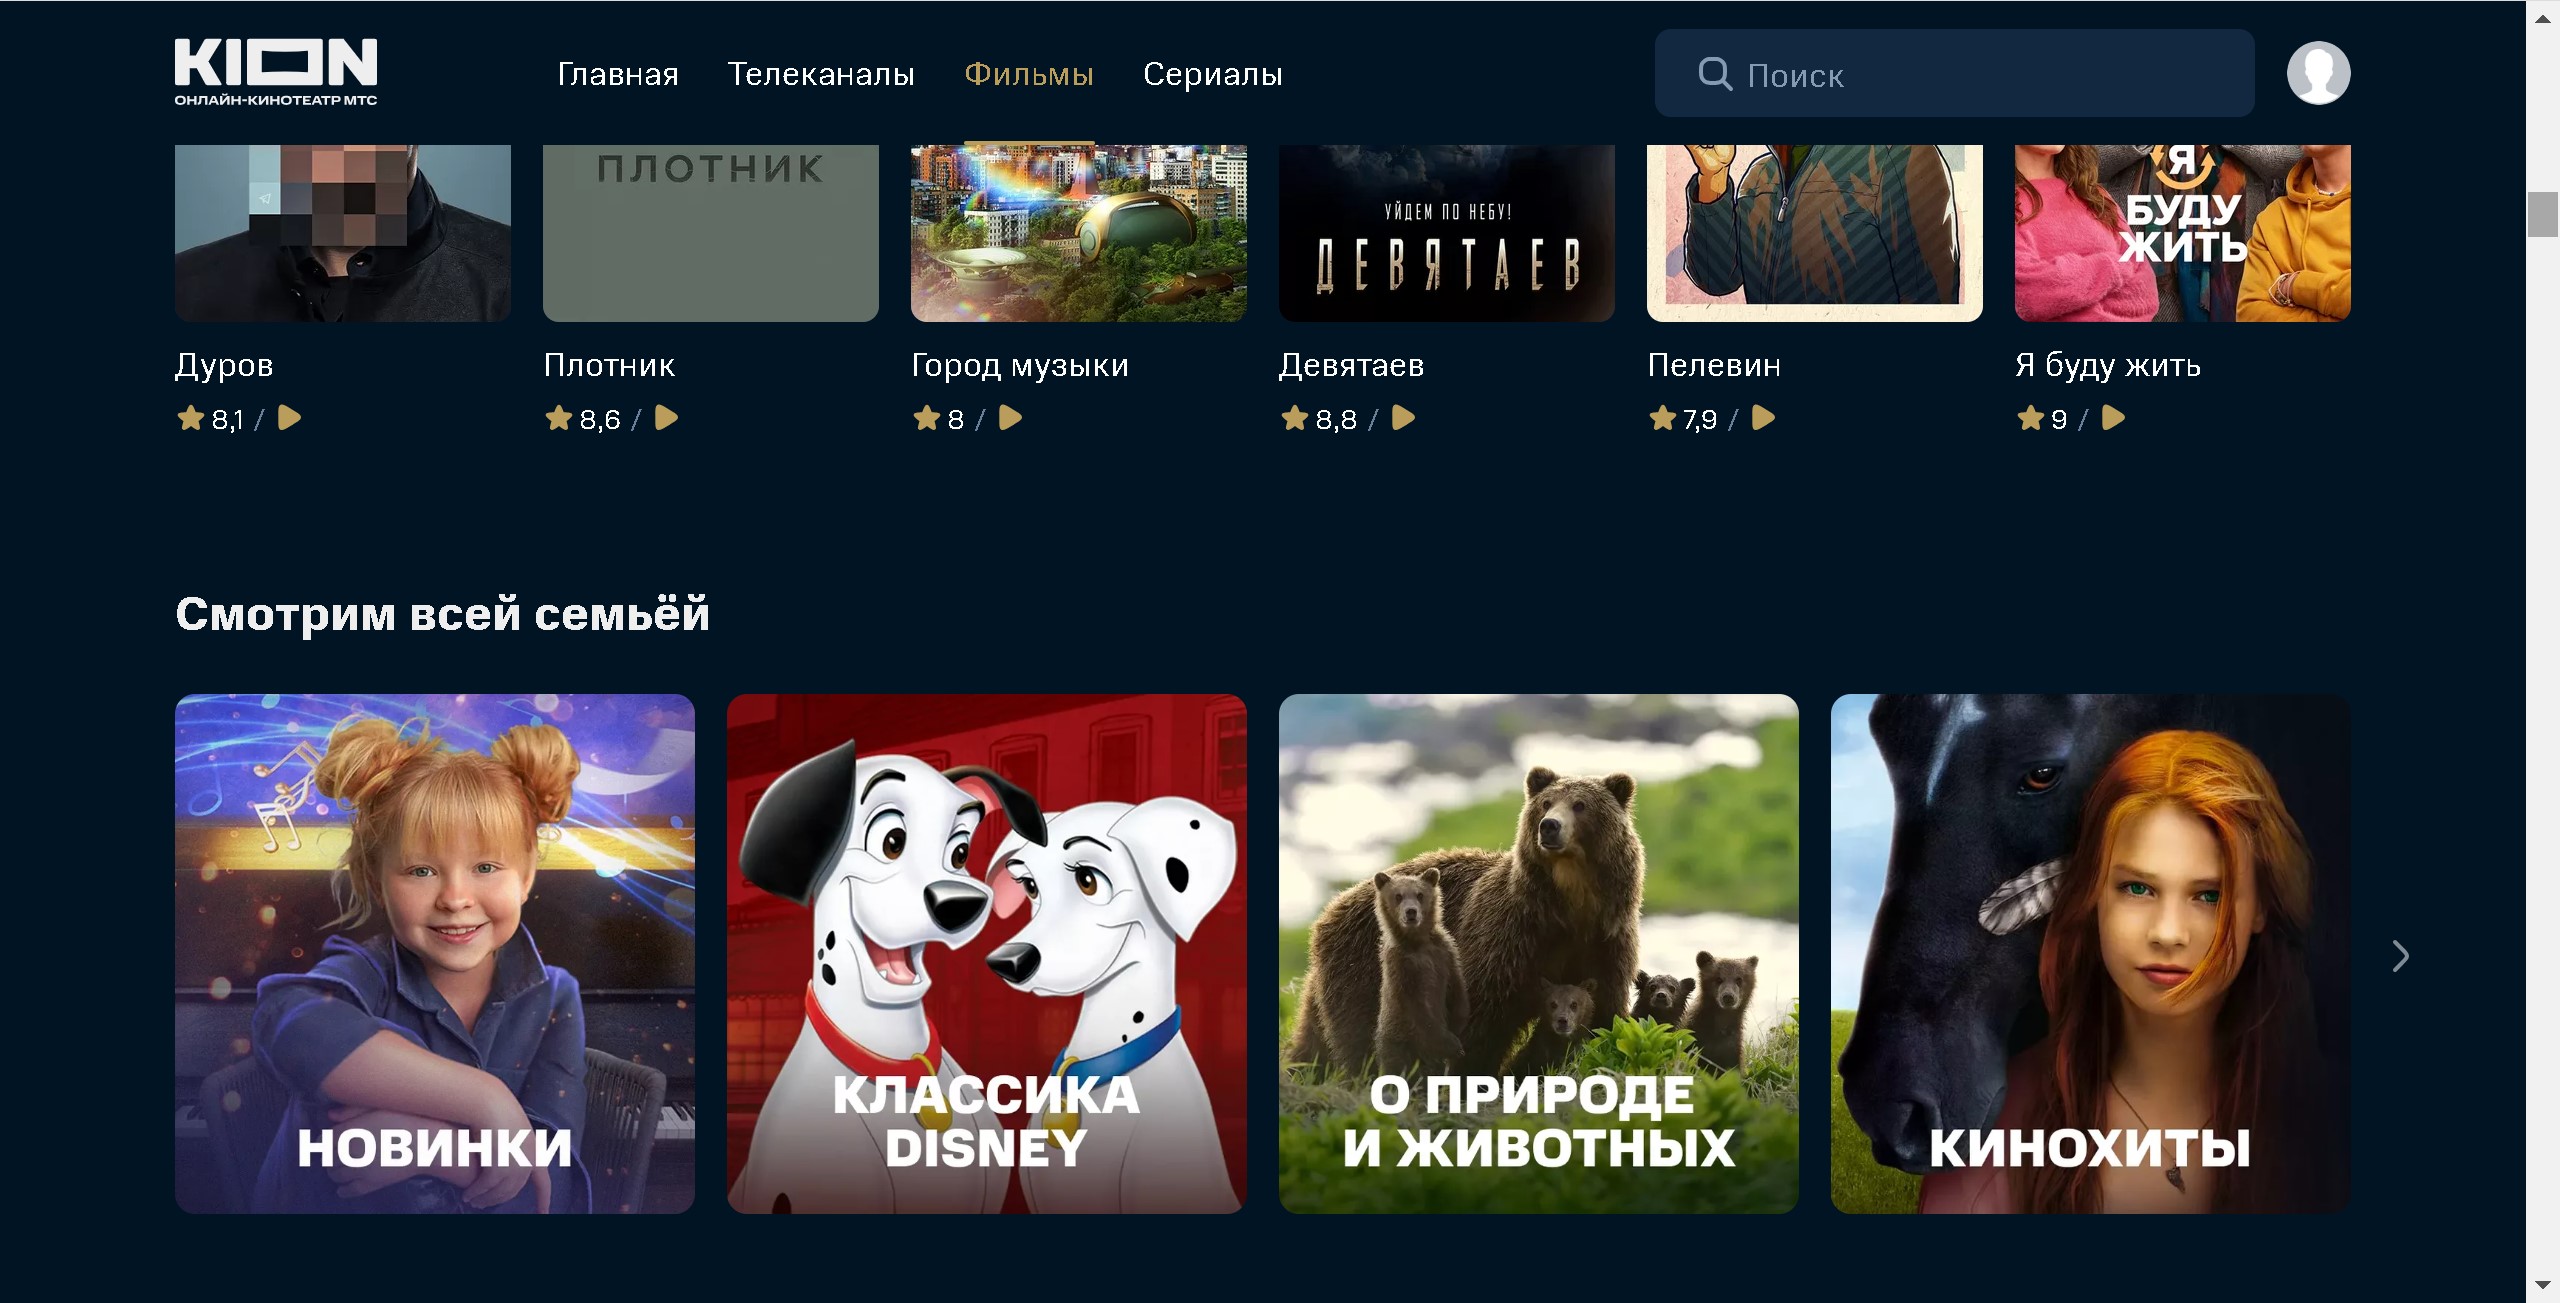 Сериал Жестокое лето смотреть онлайн все серии подряд на русском языке бесплатно в хорошем качестве